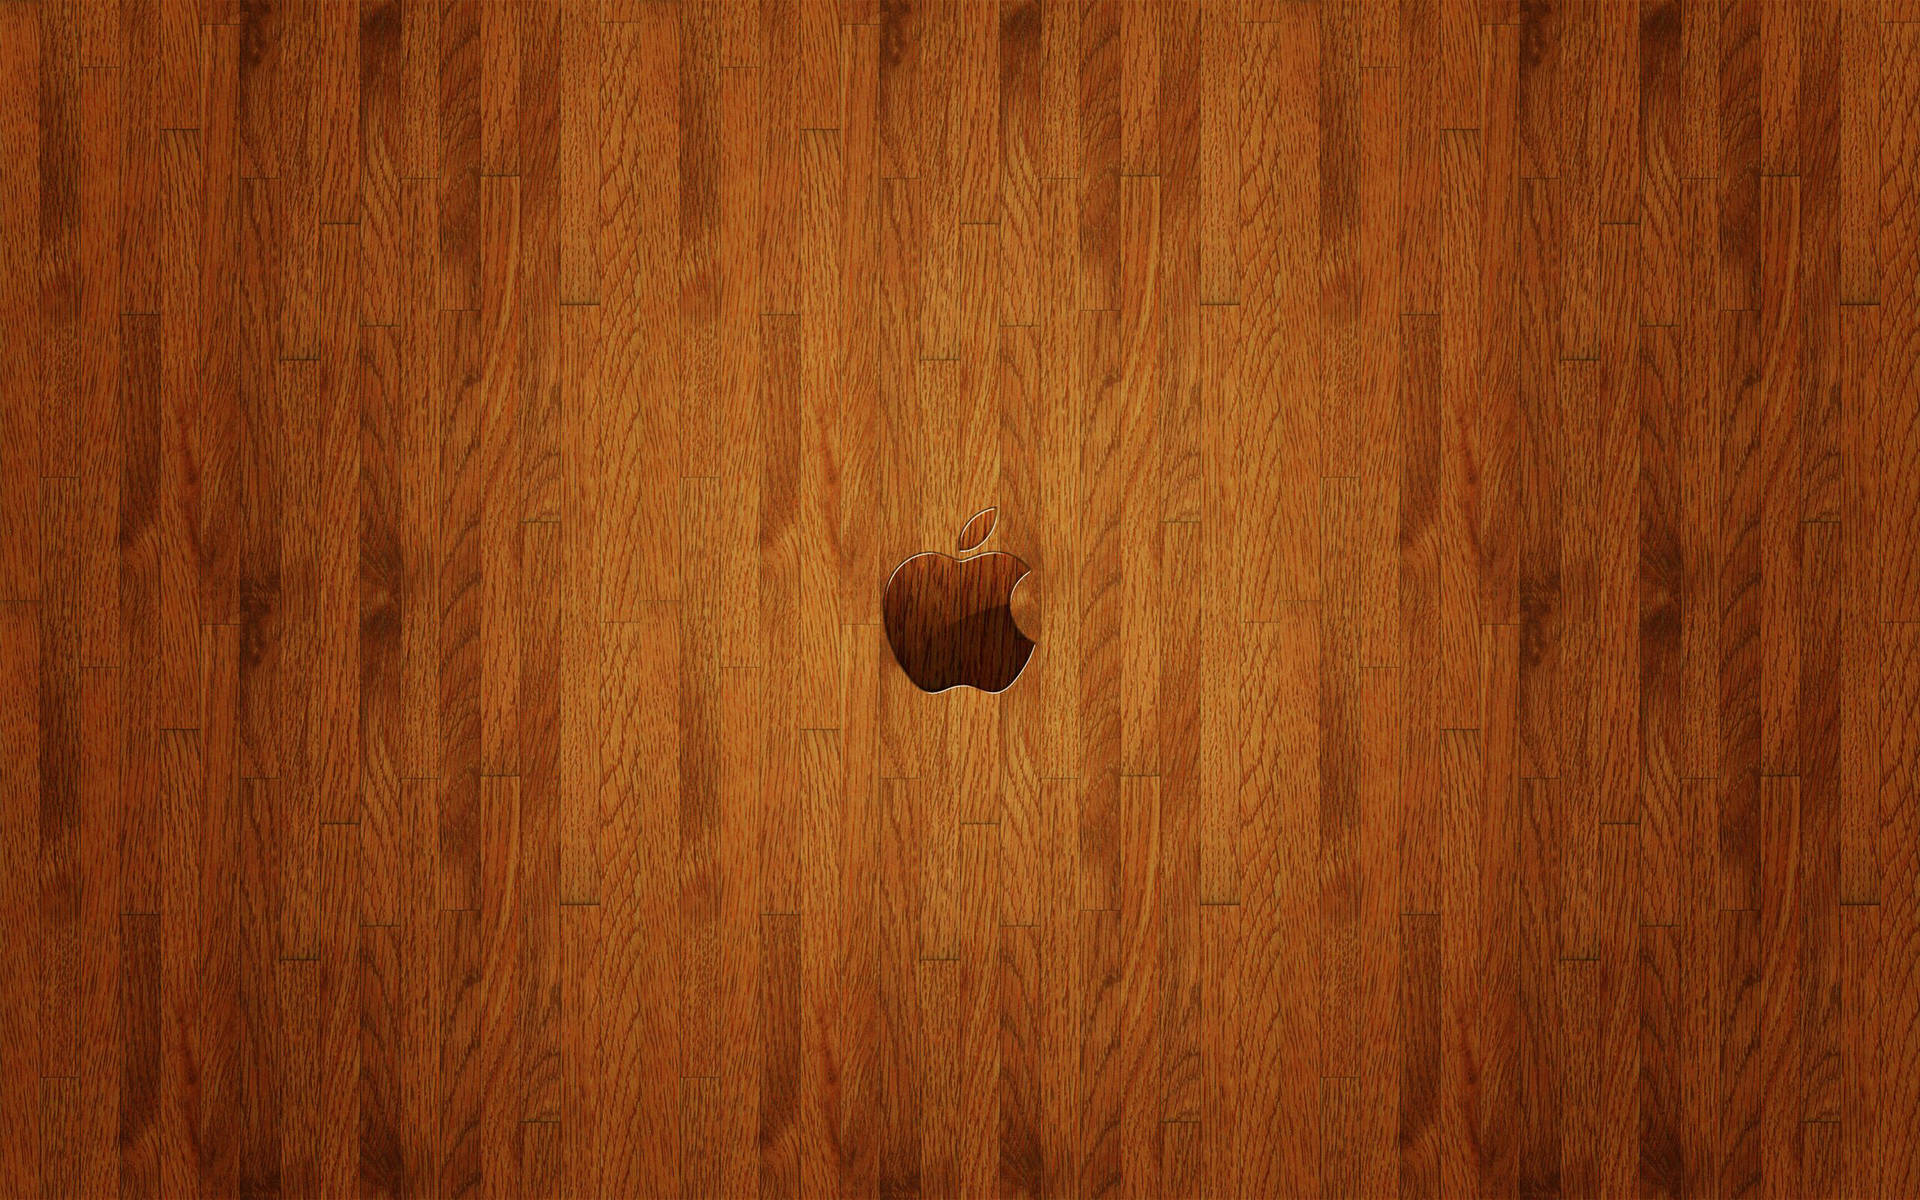 Apple 4k Ultra Hd Wooden Background Wallpaper